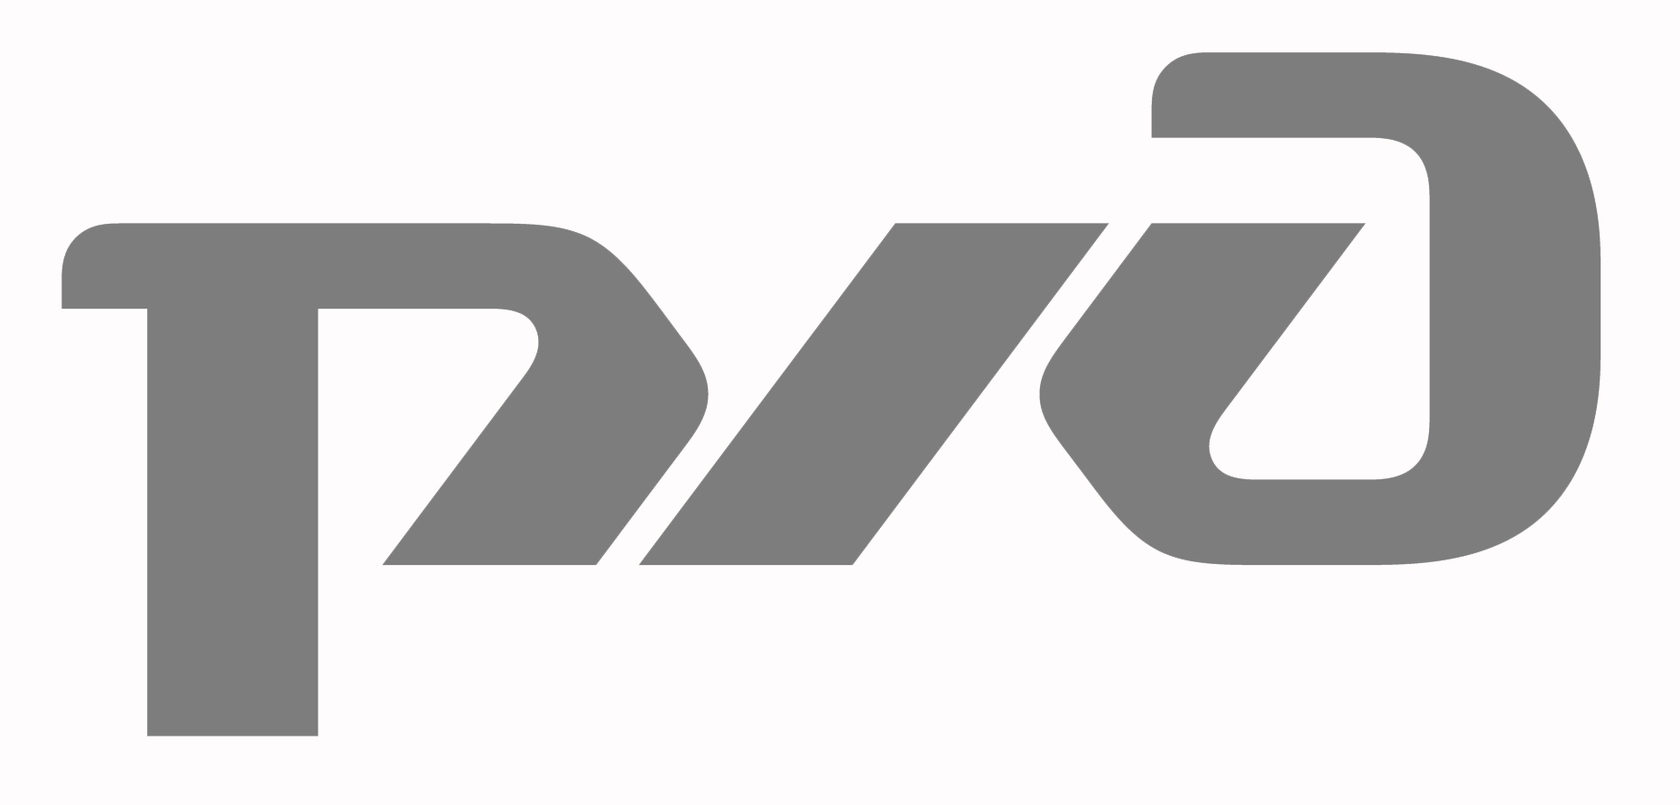 РЖД логотип черный